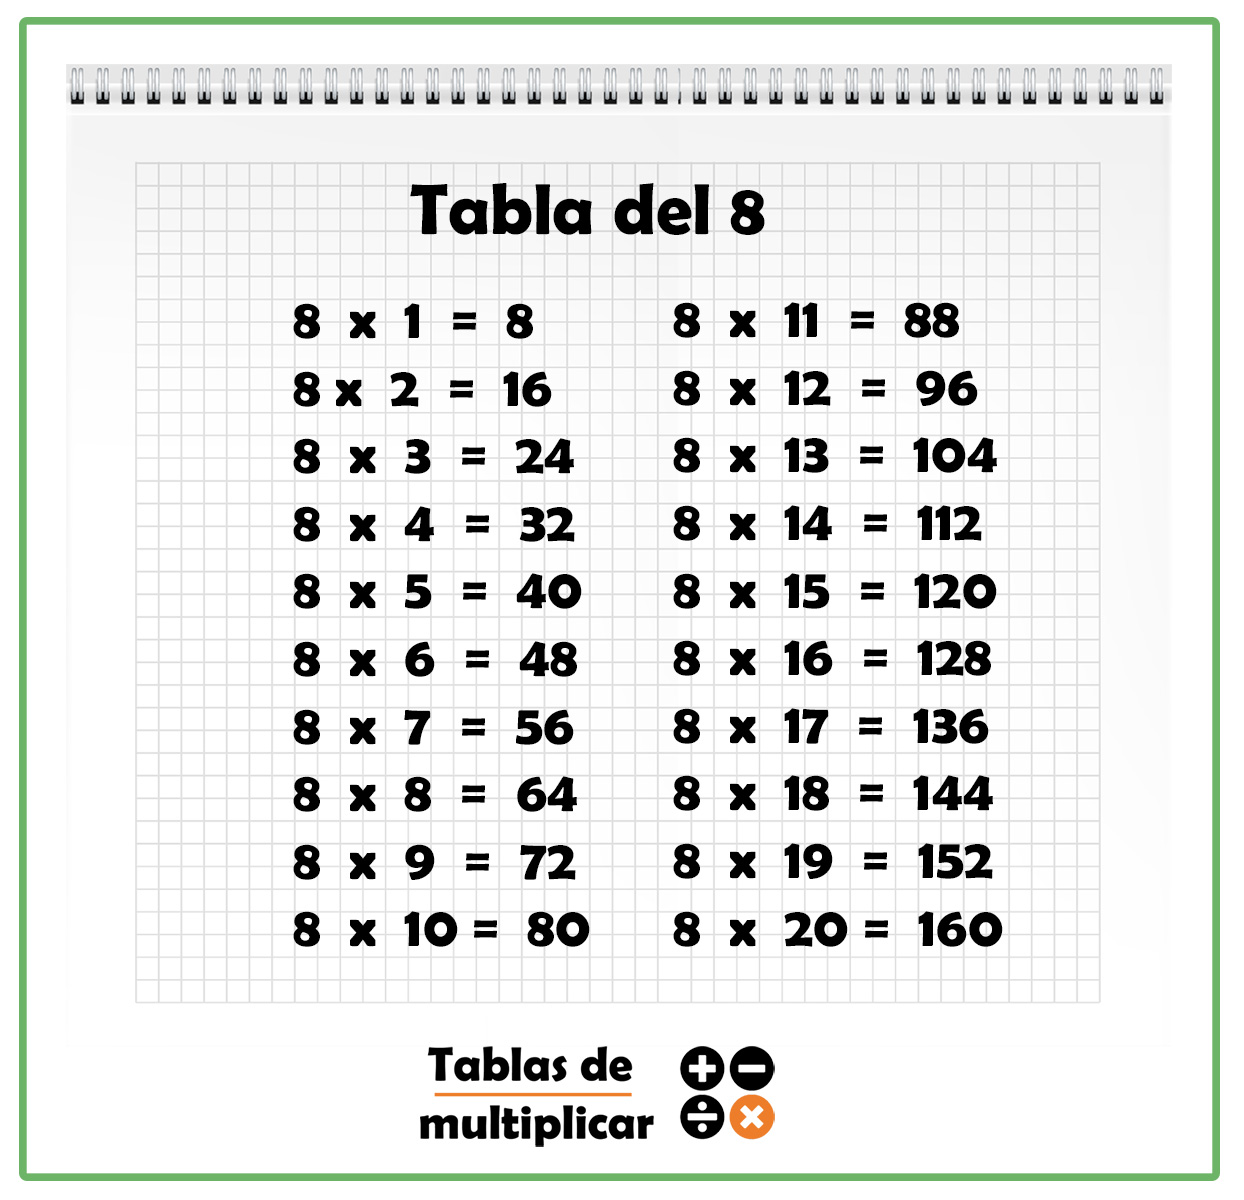 Fotos De La Tabla Del 8 Tabla del 8 - Aprende las tablas de multiplicar